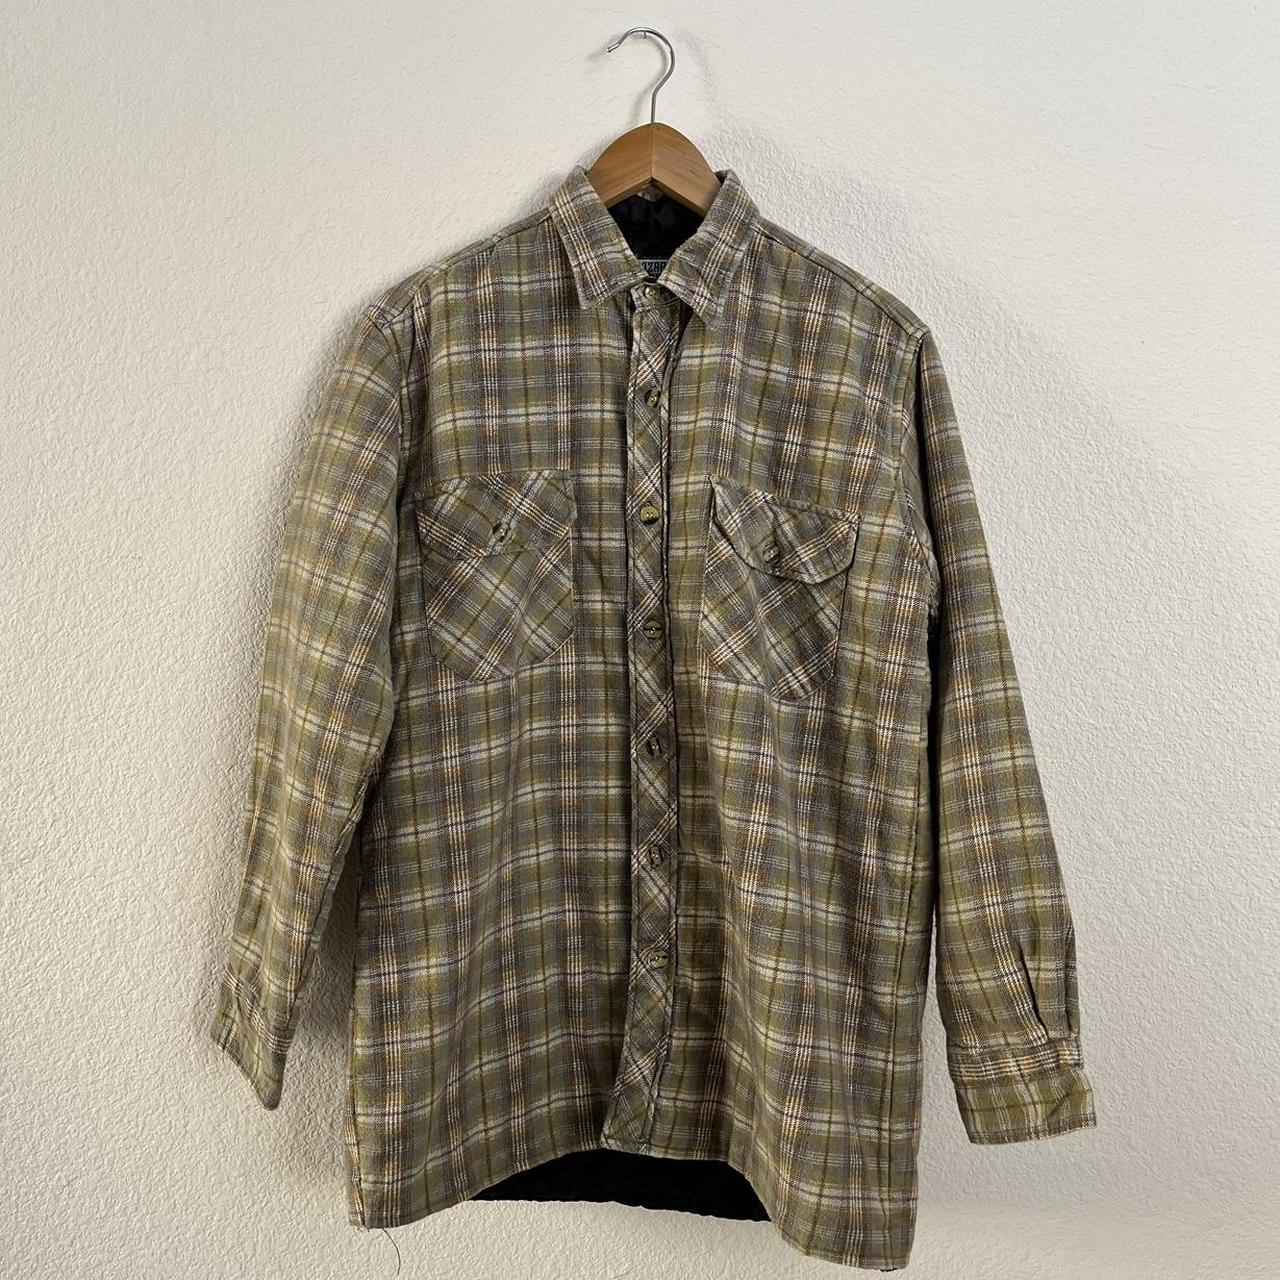 Vintage ‘90s men’s flannel jacket 🧸 Men’s M/L dm for... - Depop